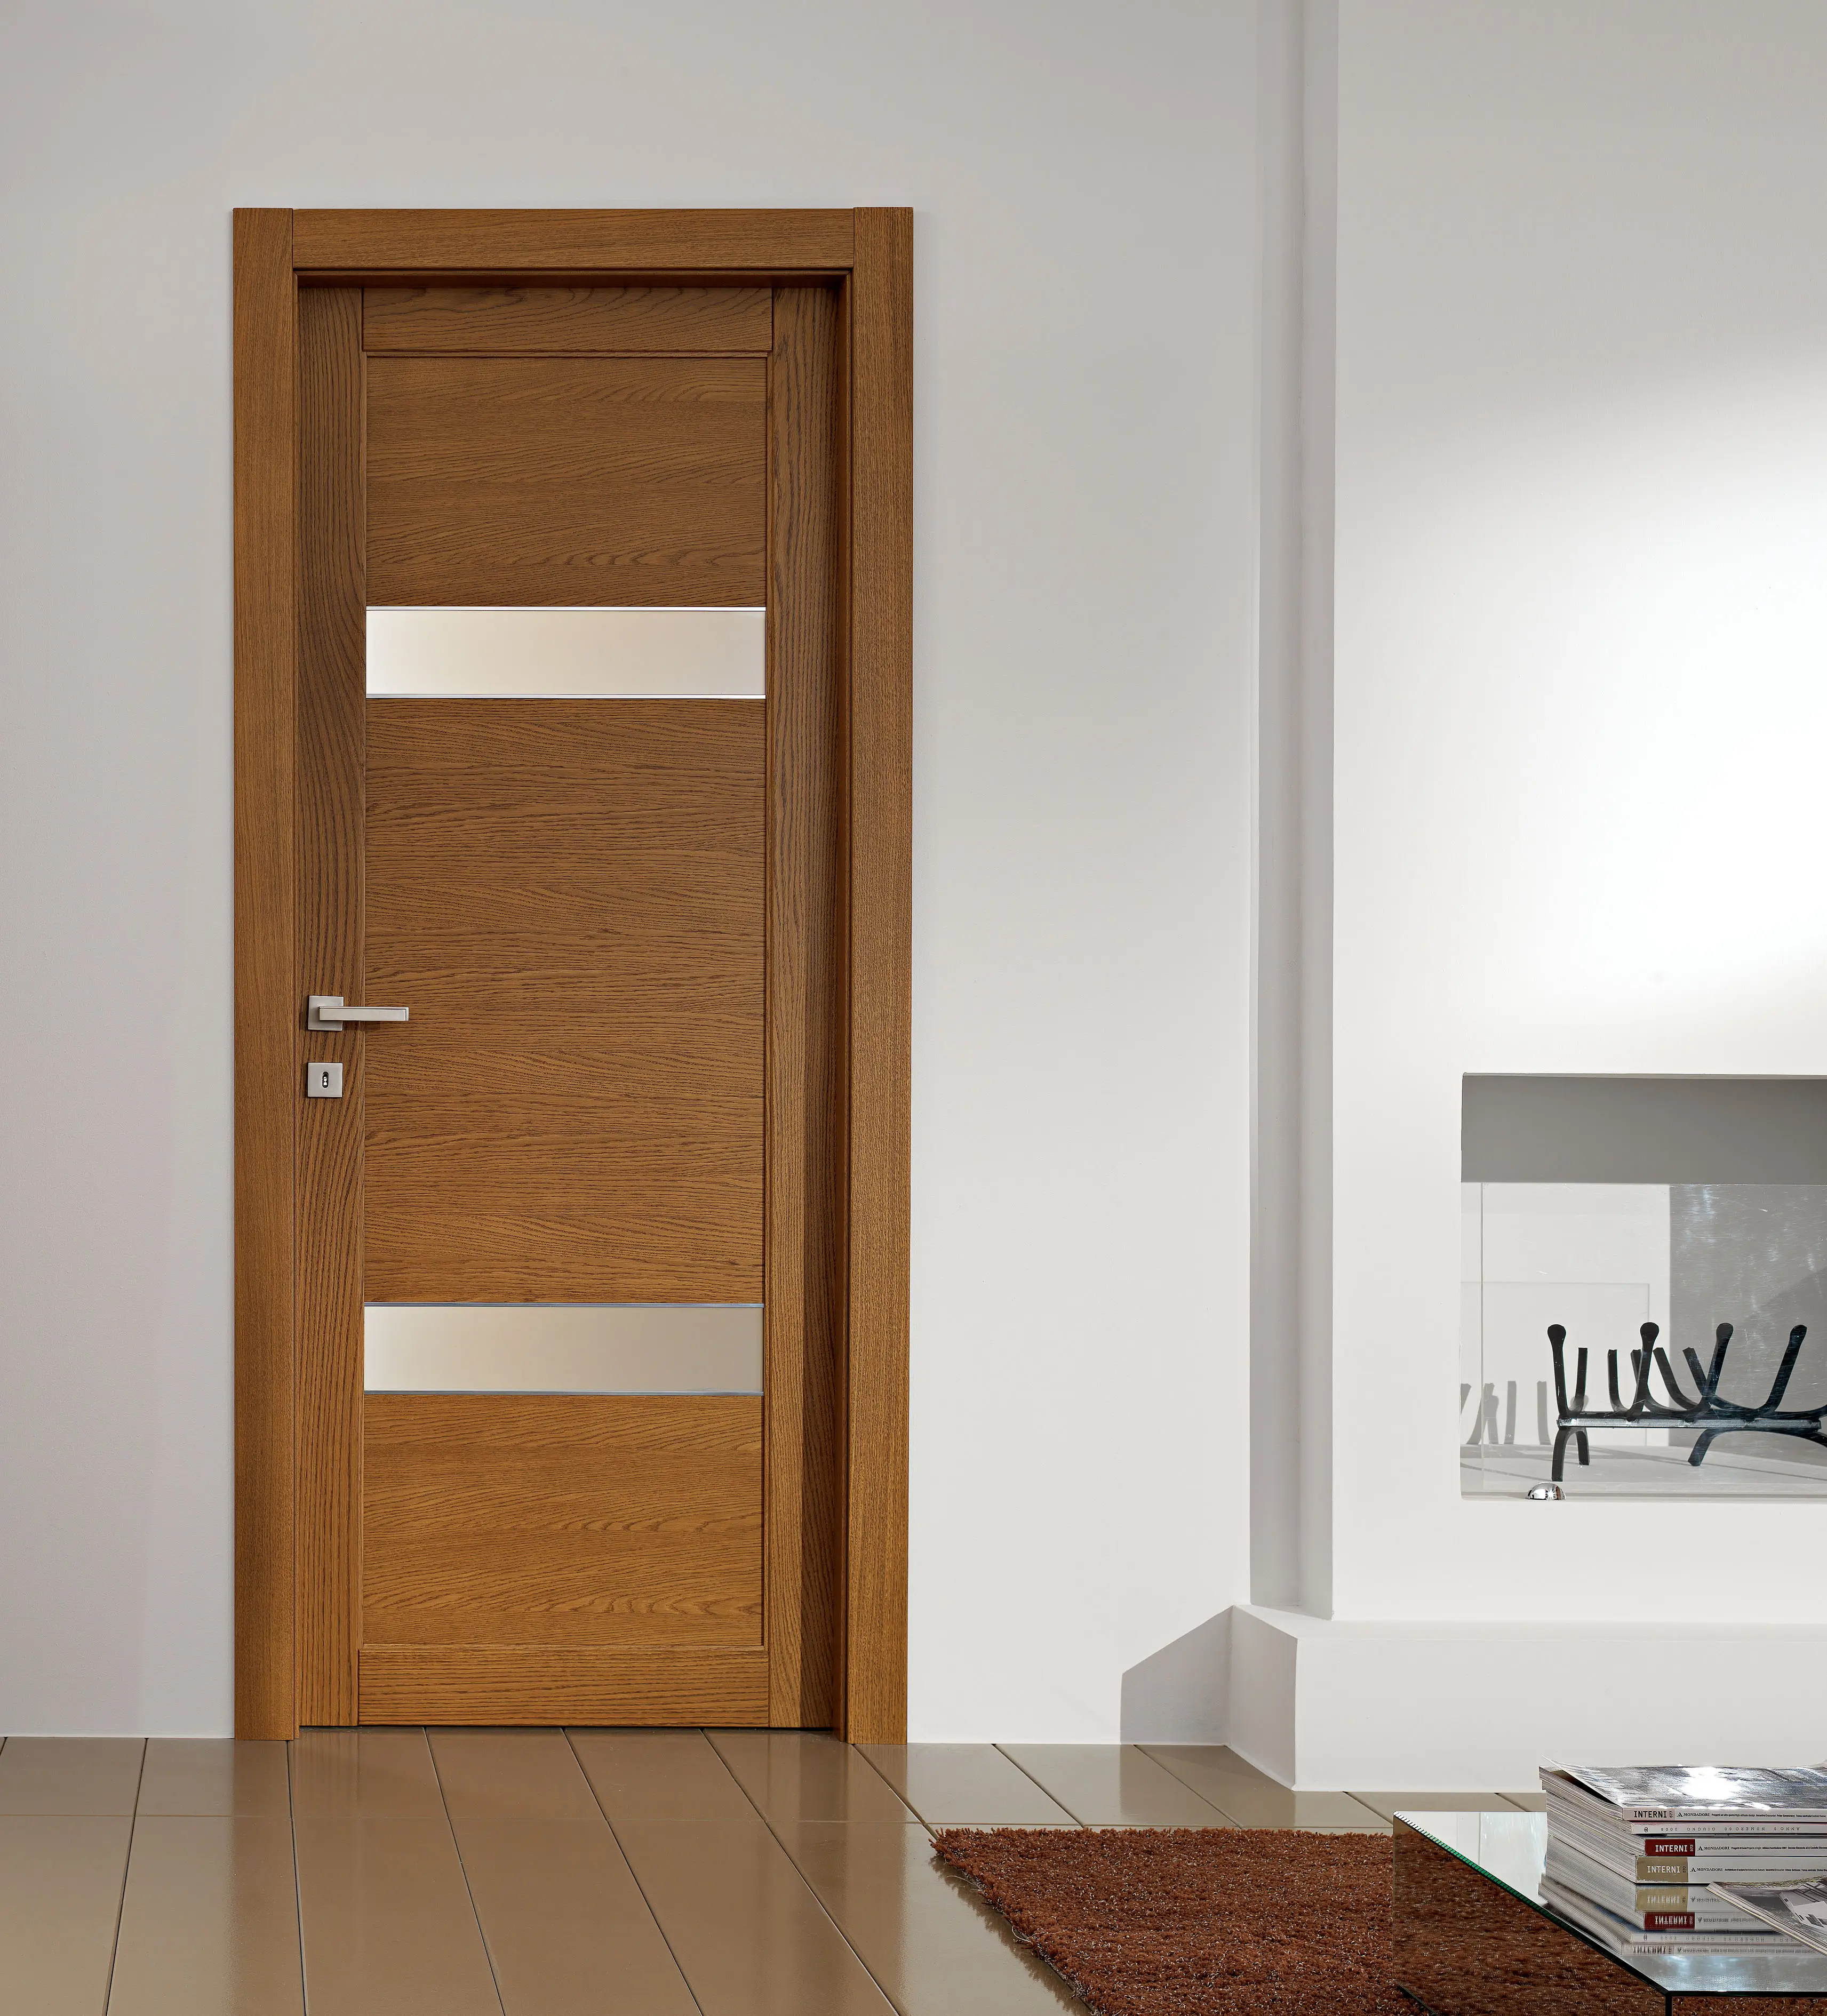 Lingyin design moderno porta de madeira porta imagens porta principal modelos